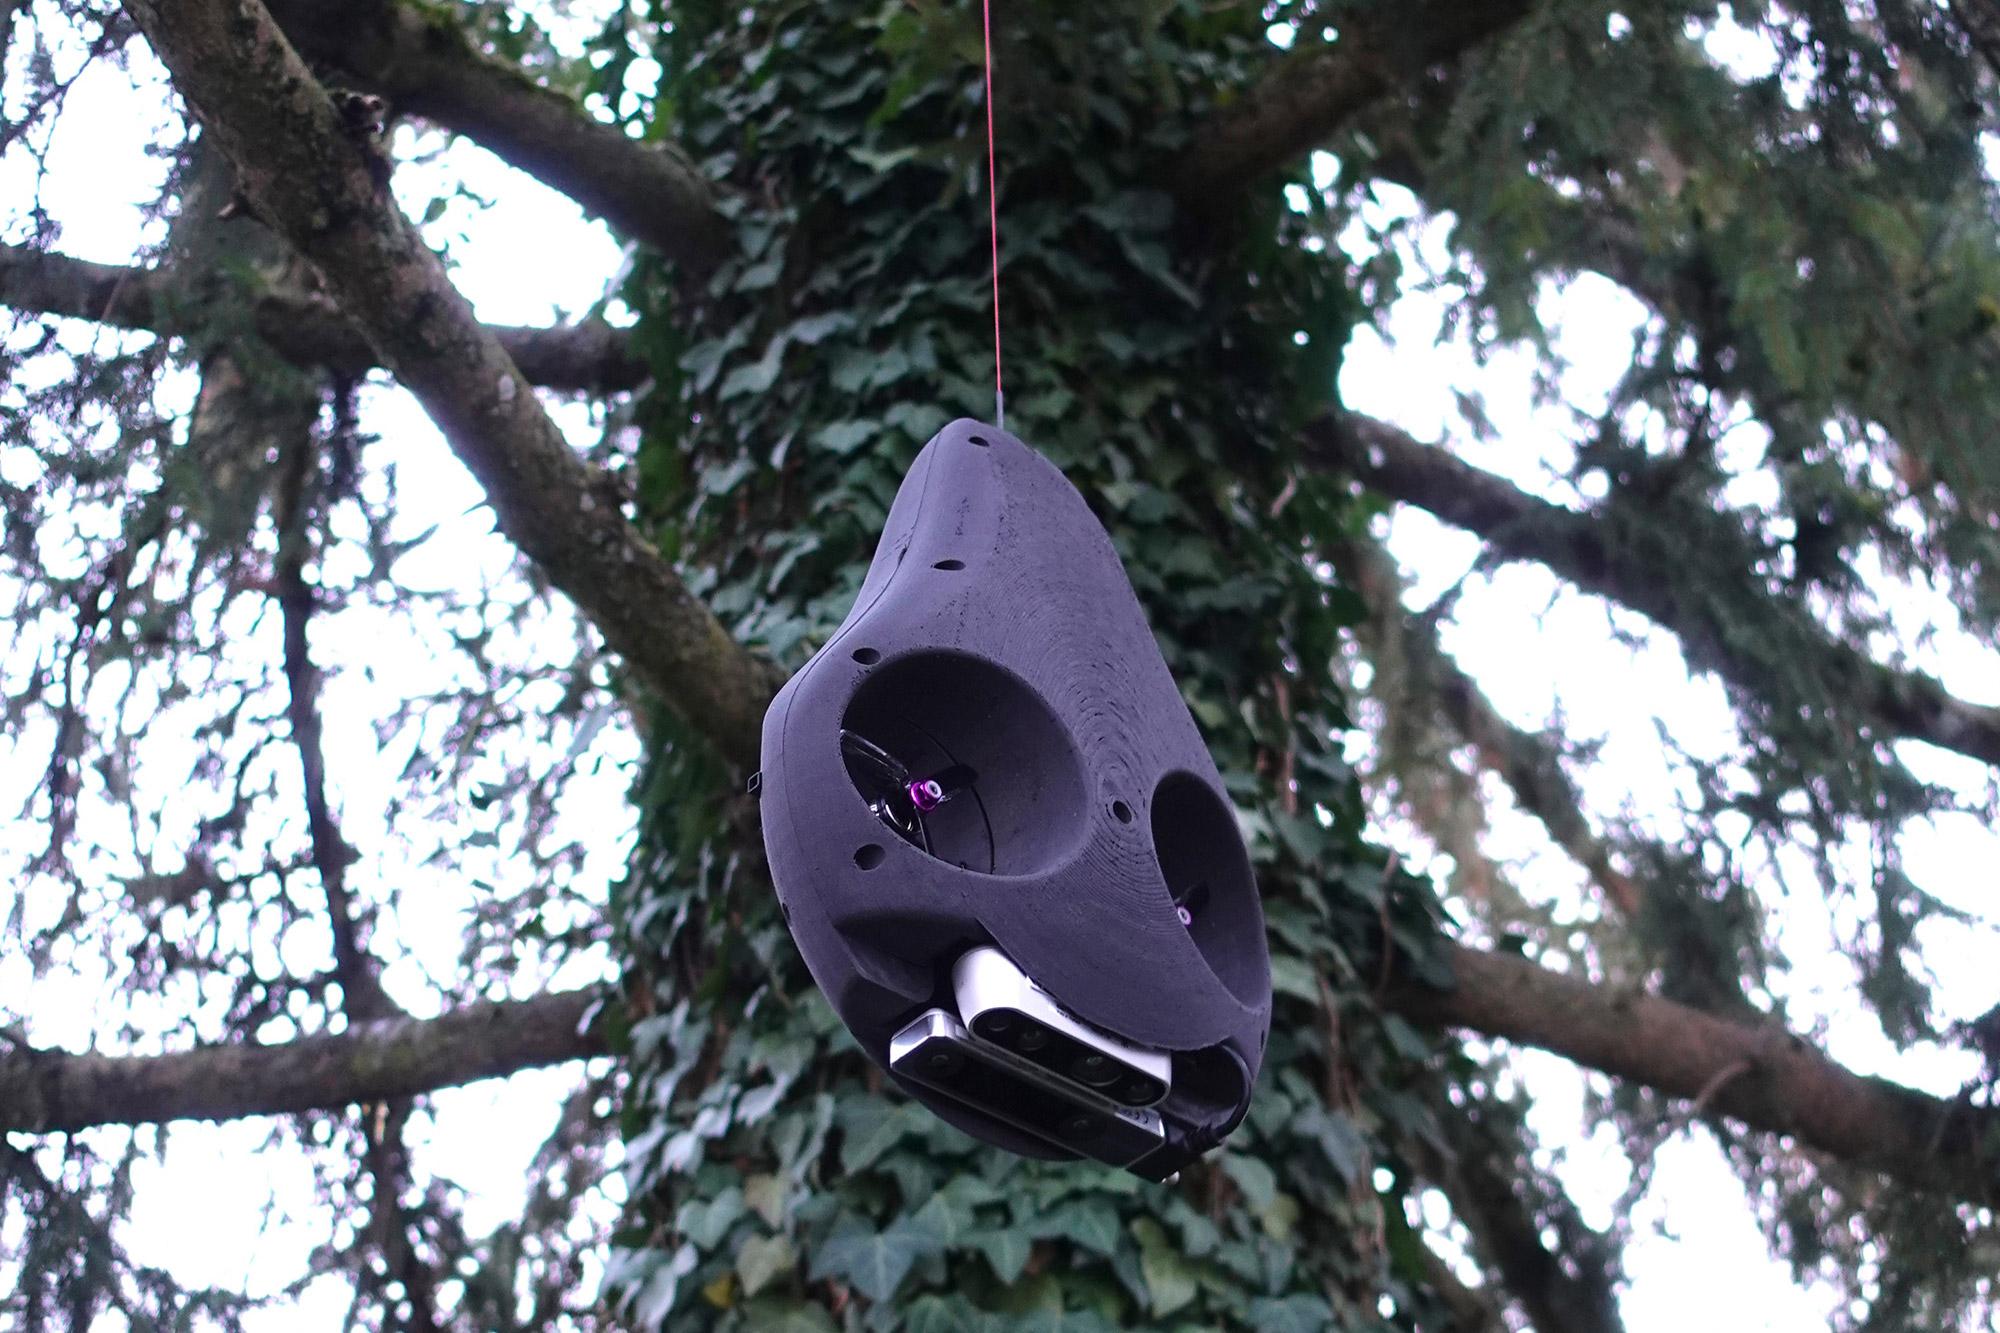 Roboter Avocado manövriert sich um die Äste in den Baumkronen. 